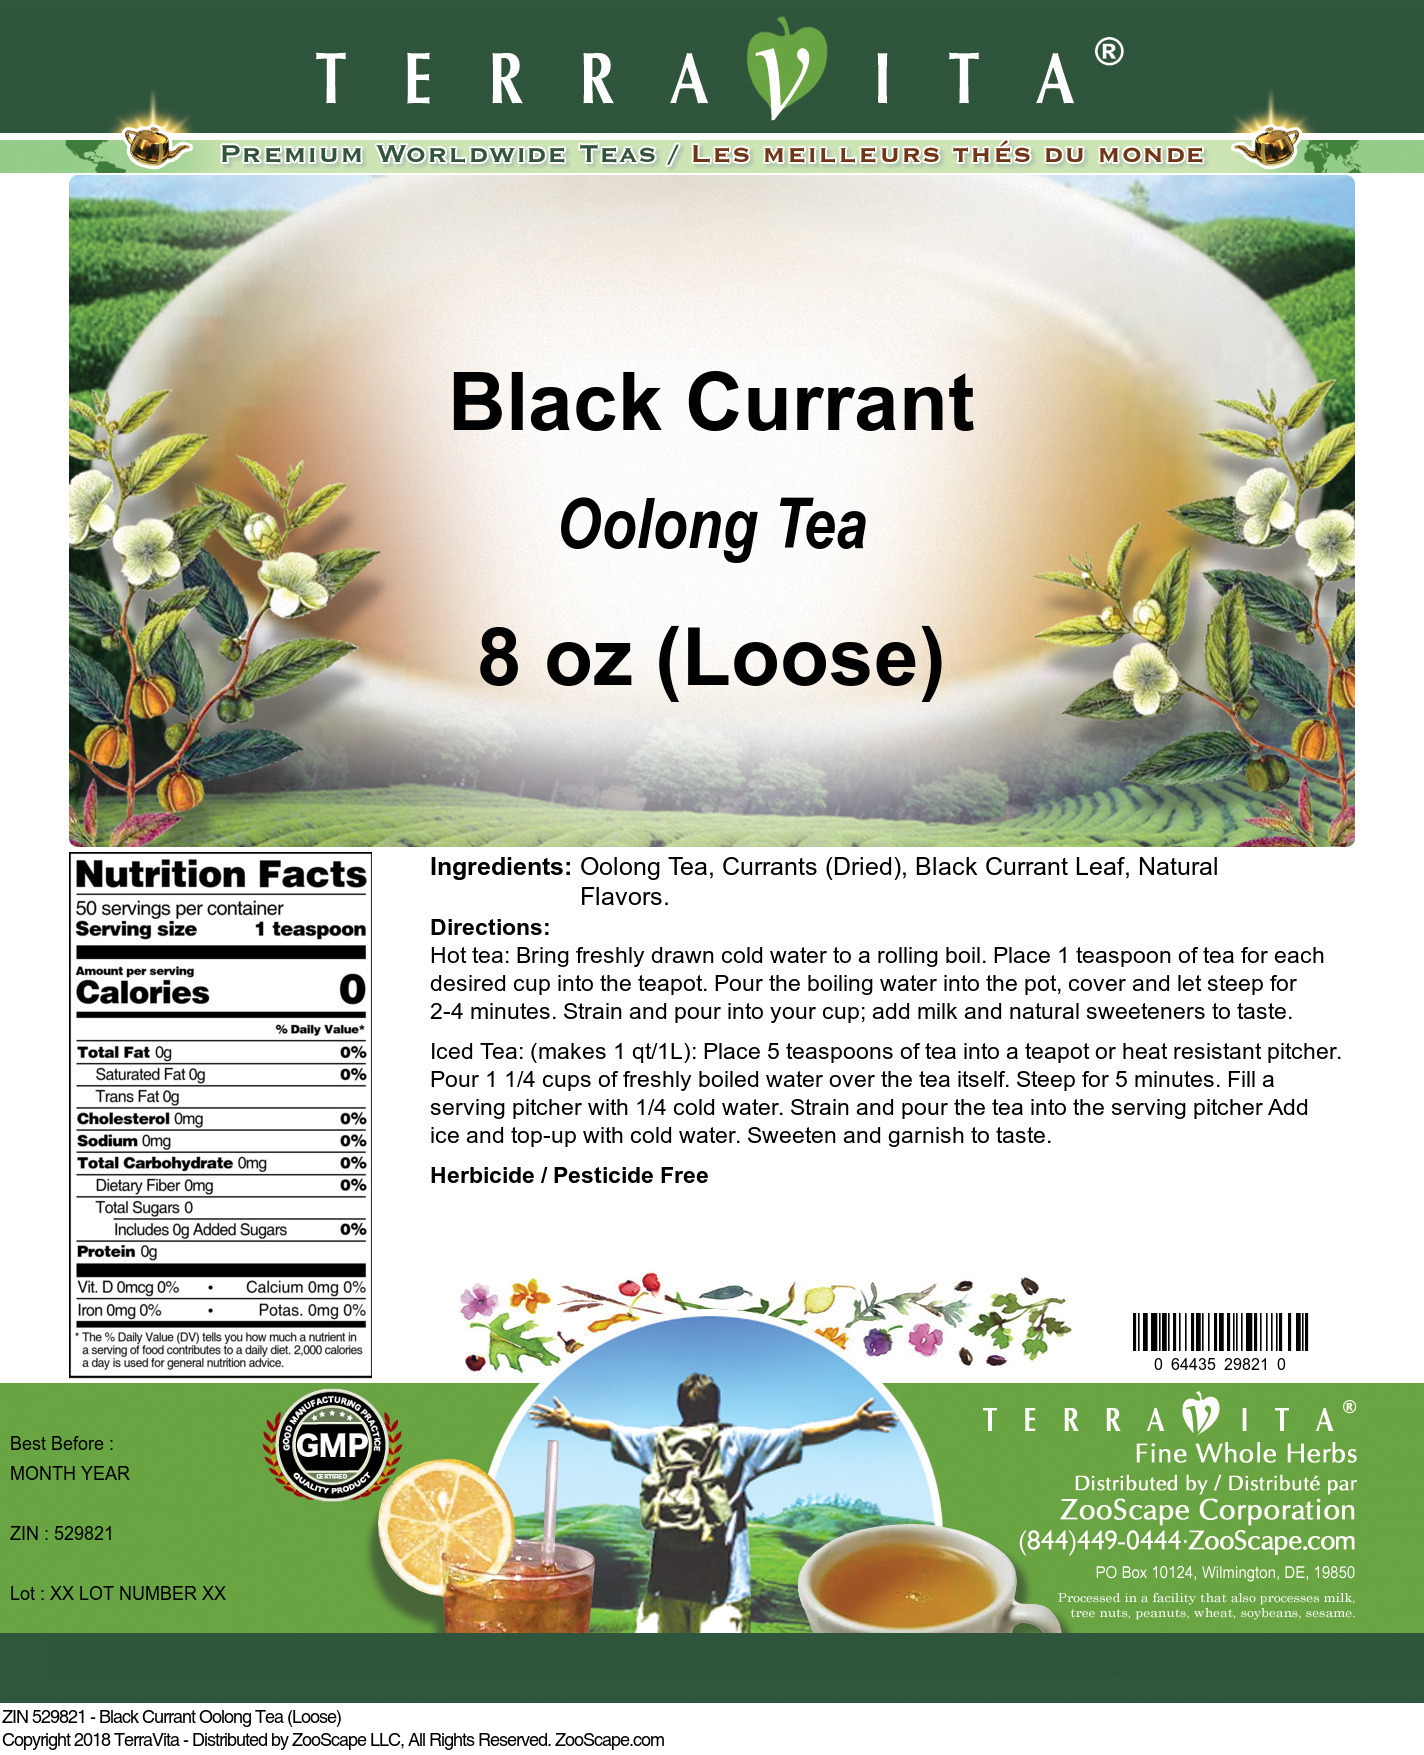 Black Currant Oolong Tea (Loose) - Label